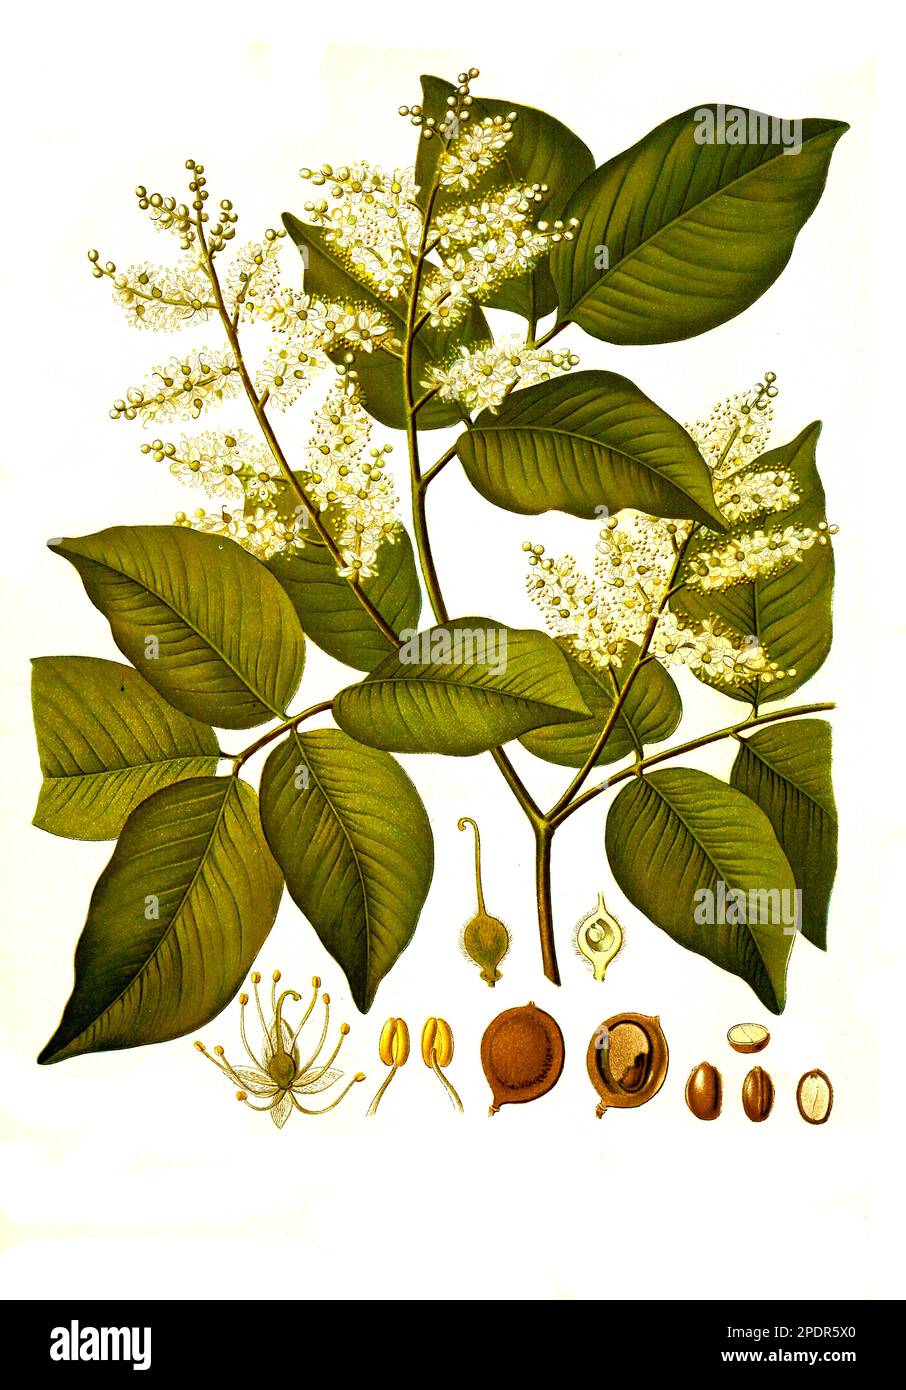 Heilpflanze, Copaifera officinalis, Copaifera ist eine Pflanzengattung in der Unterfamilie der Johannisbrotgewächse, Historisch, digital restaurierte Reproduktion von einer Vorlage aus dem 19. Jahrhundert, Stock Photo